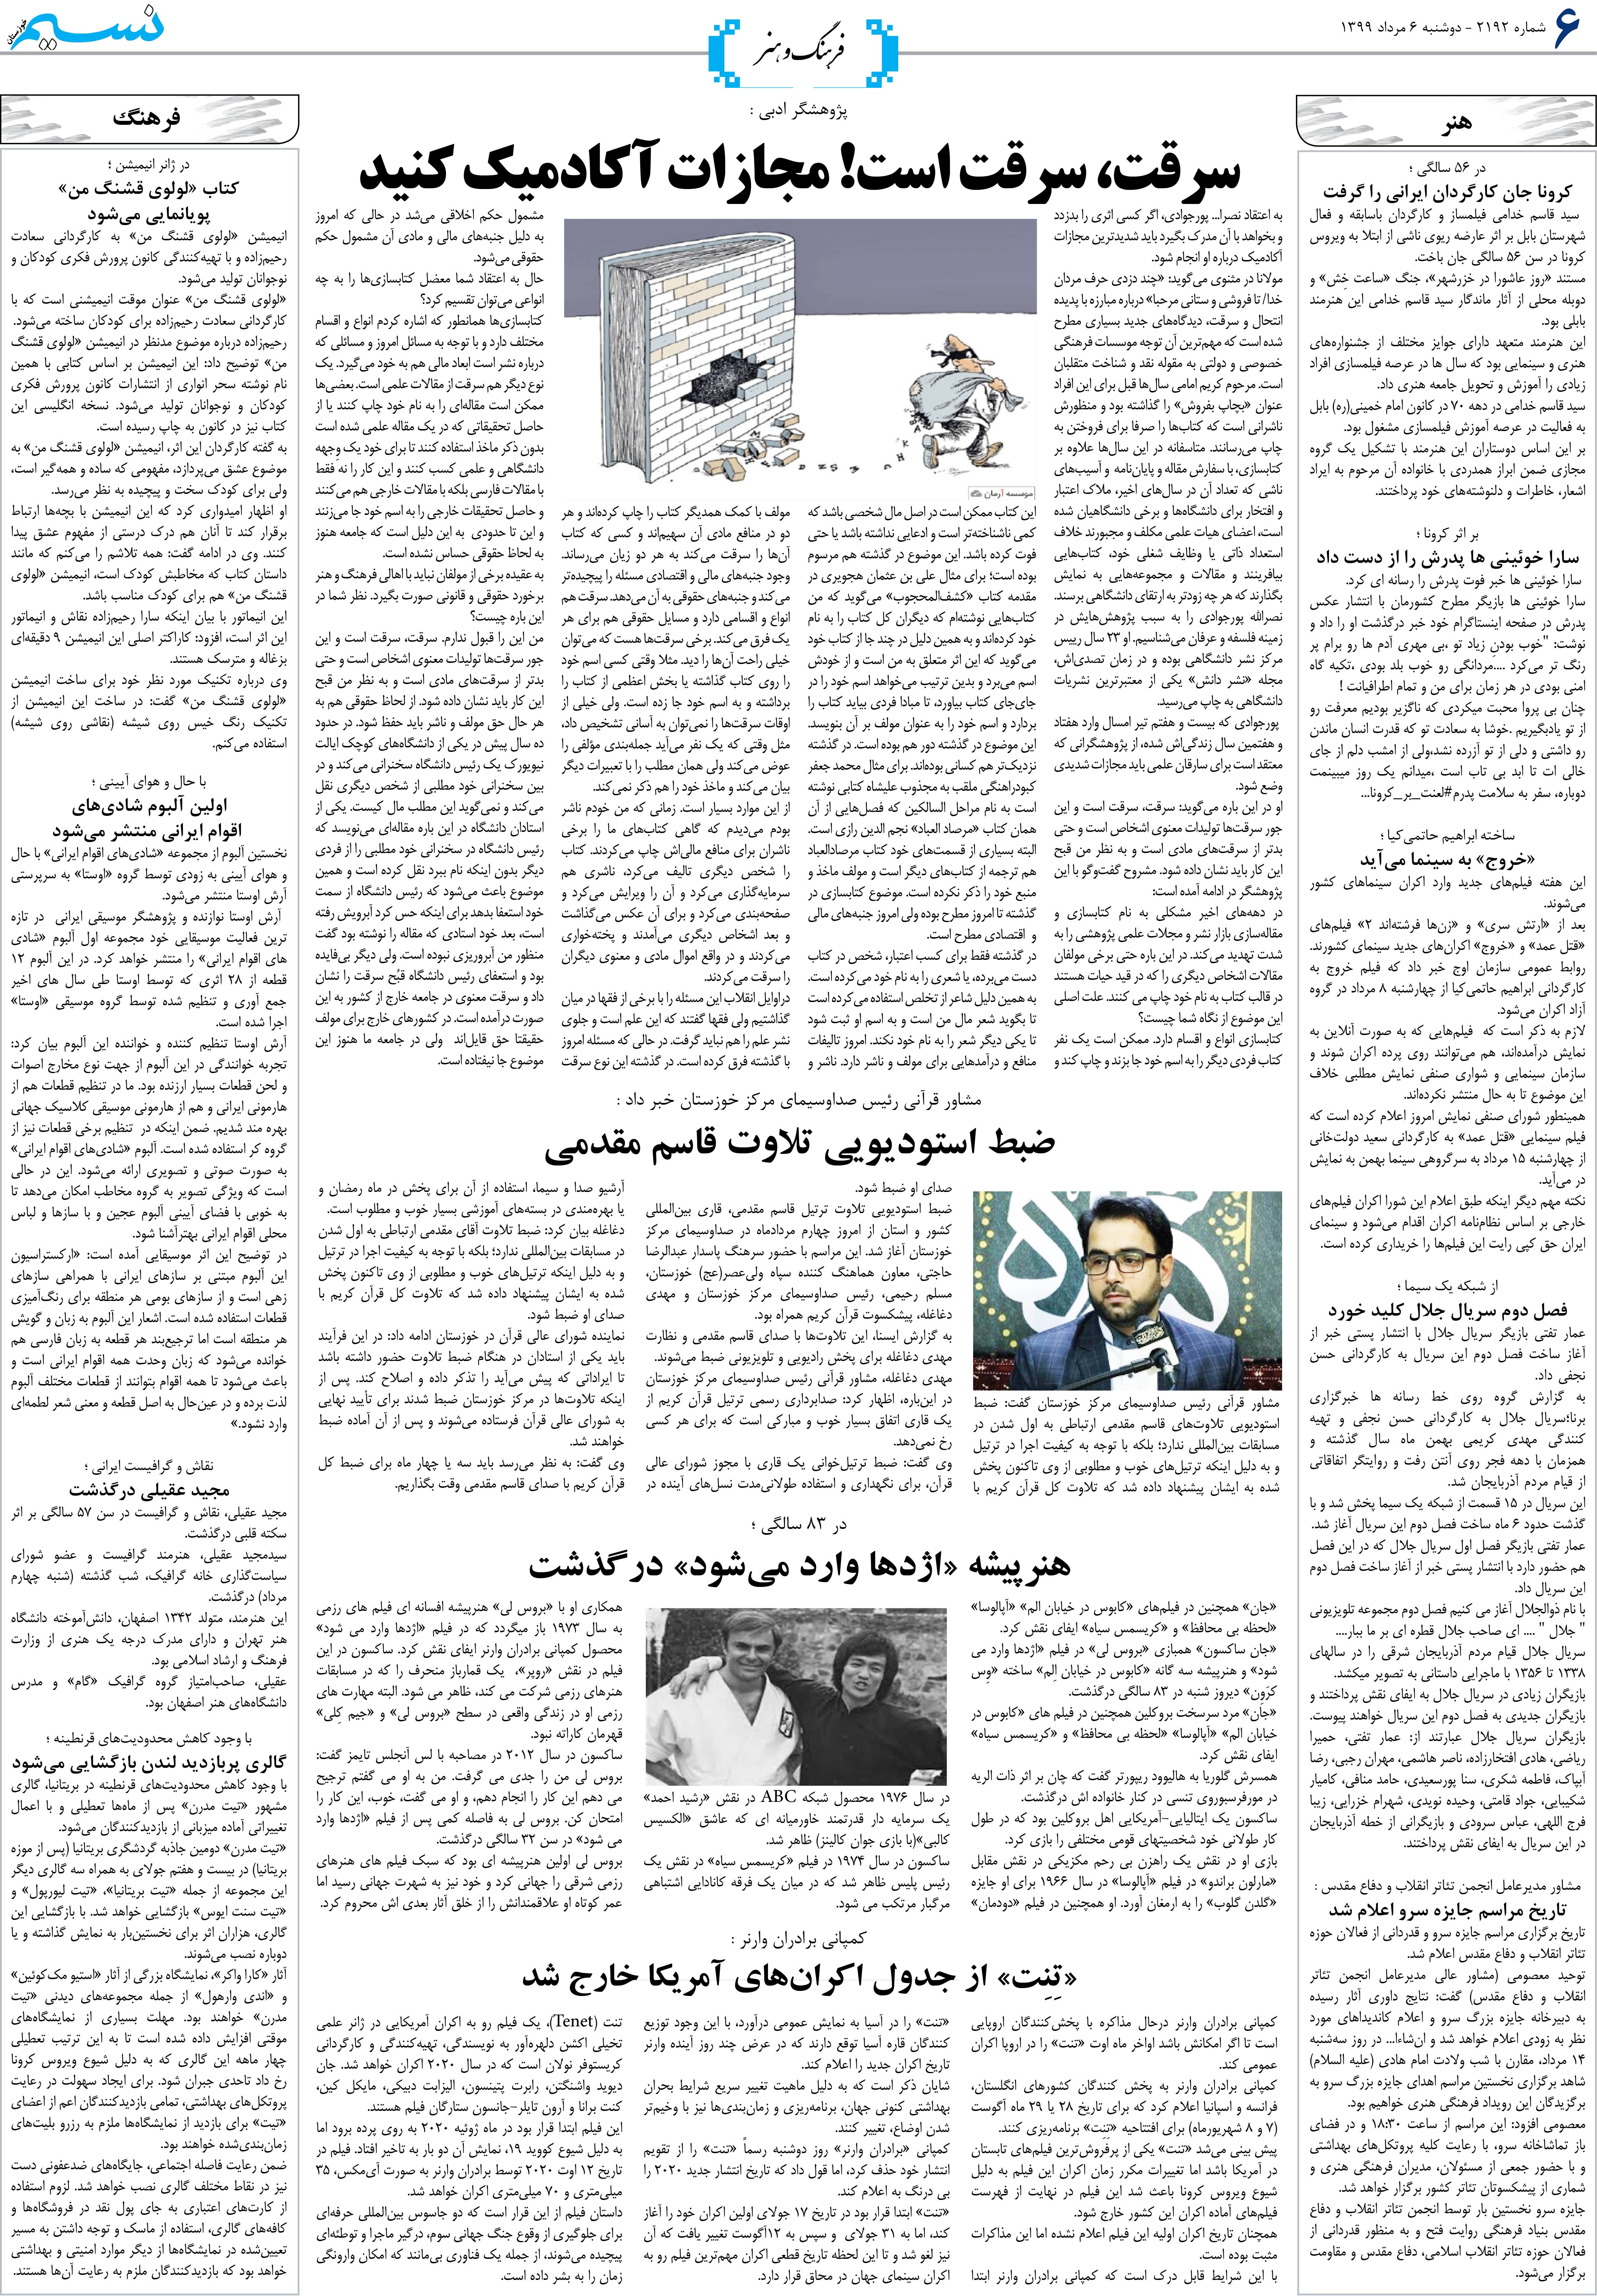 صفحه فرهنگ و هنر روزنامه نسیم شماره 2192